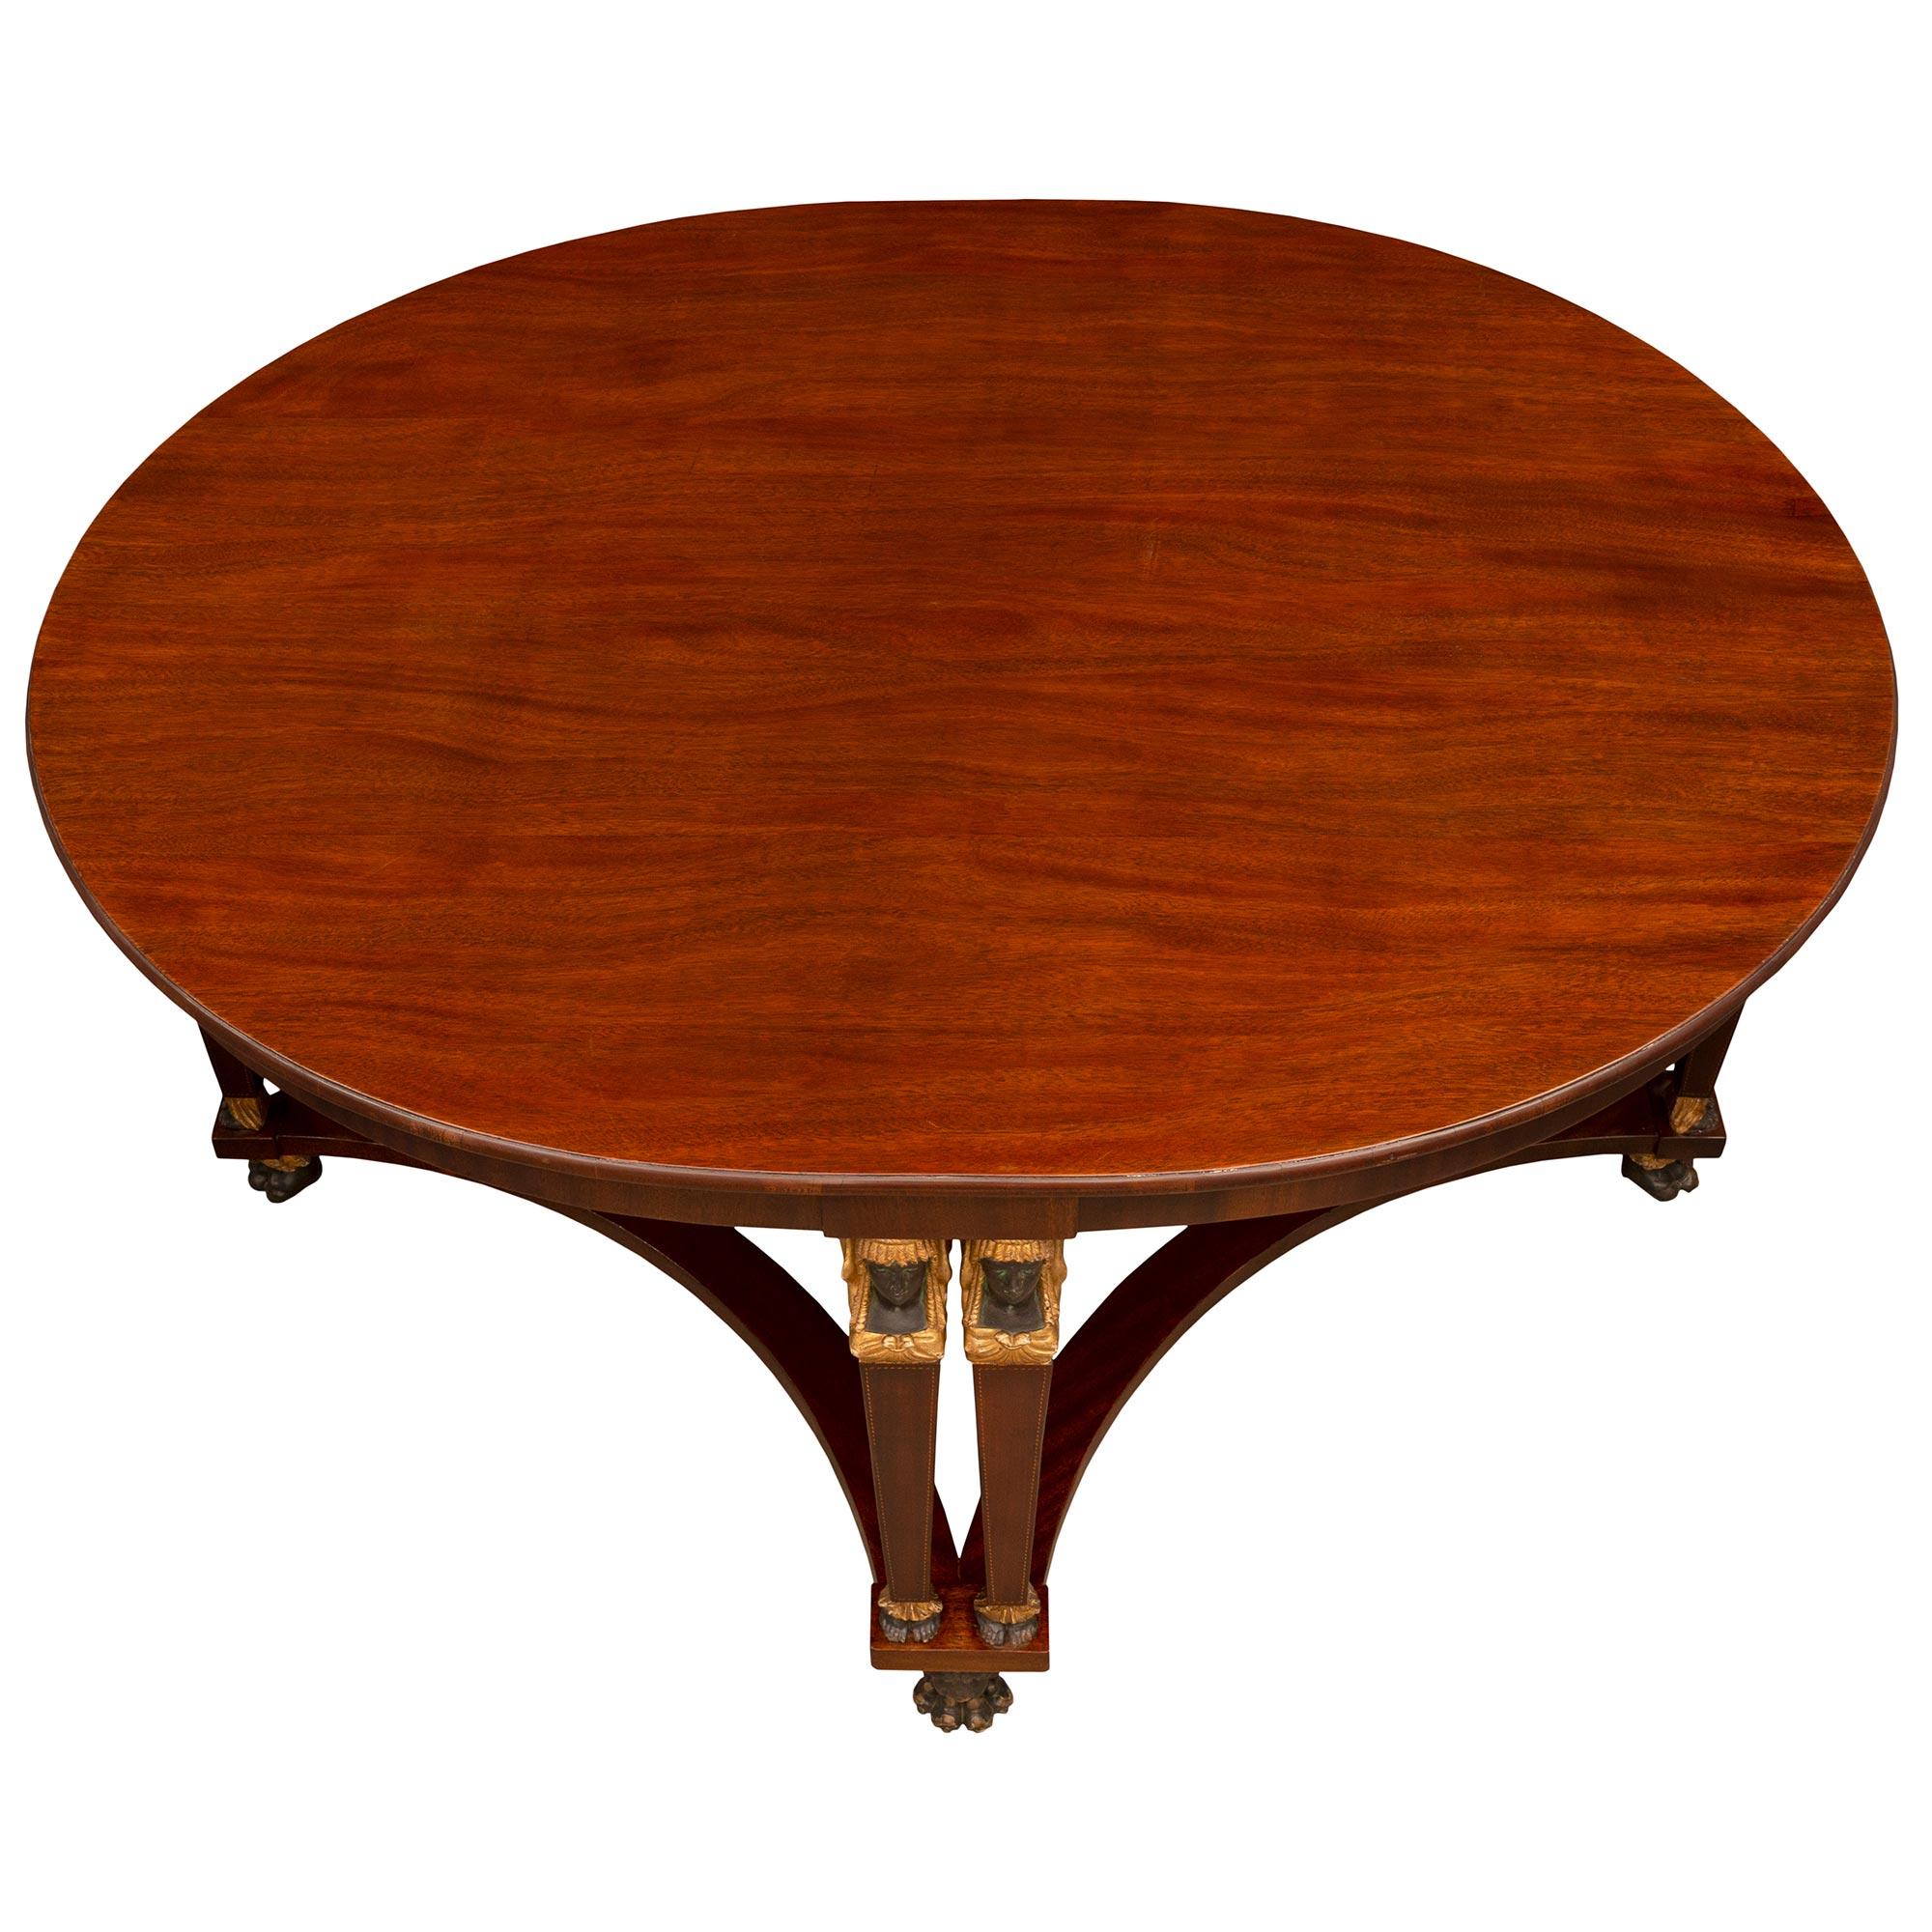 Une impressionnante et très belle table centrale néo-classique italienne du 19ème siècle. Table centrale en acajou, polychrome et bois doré. La table ovale est surélevée par de remarquables et uniques pieds à tête et pattes de lion, sous quatre